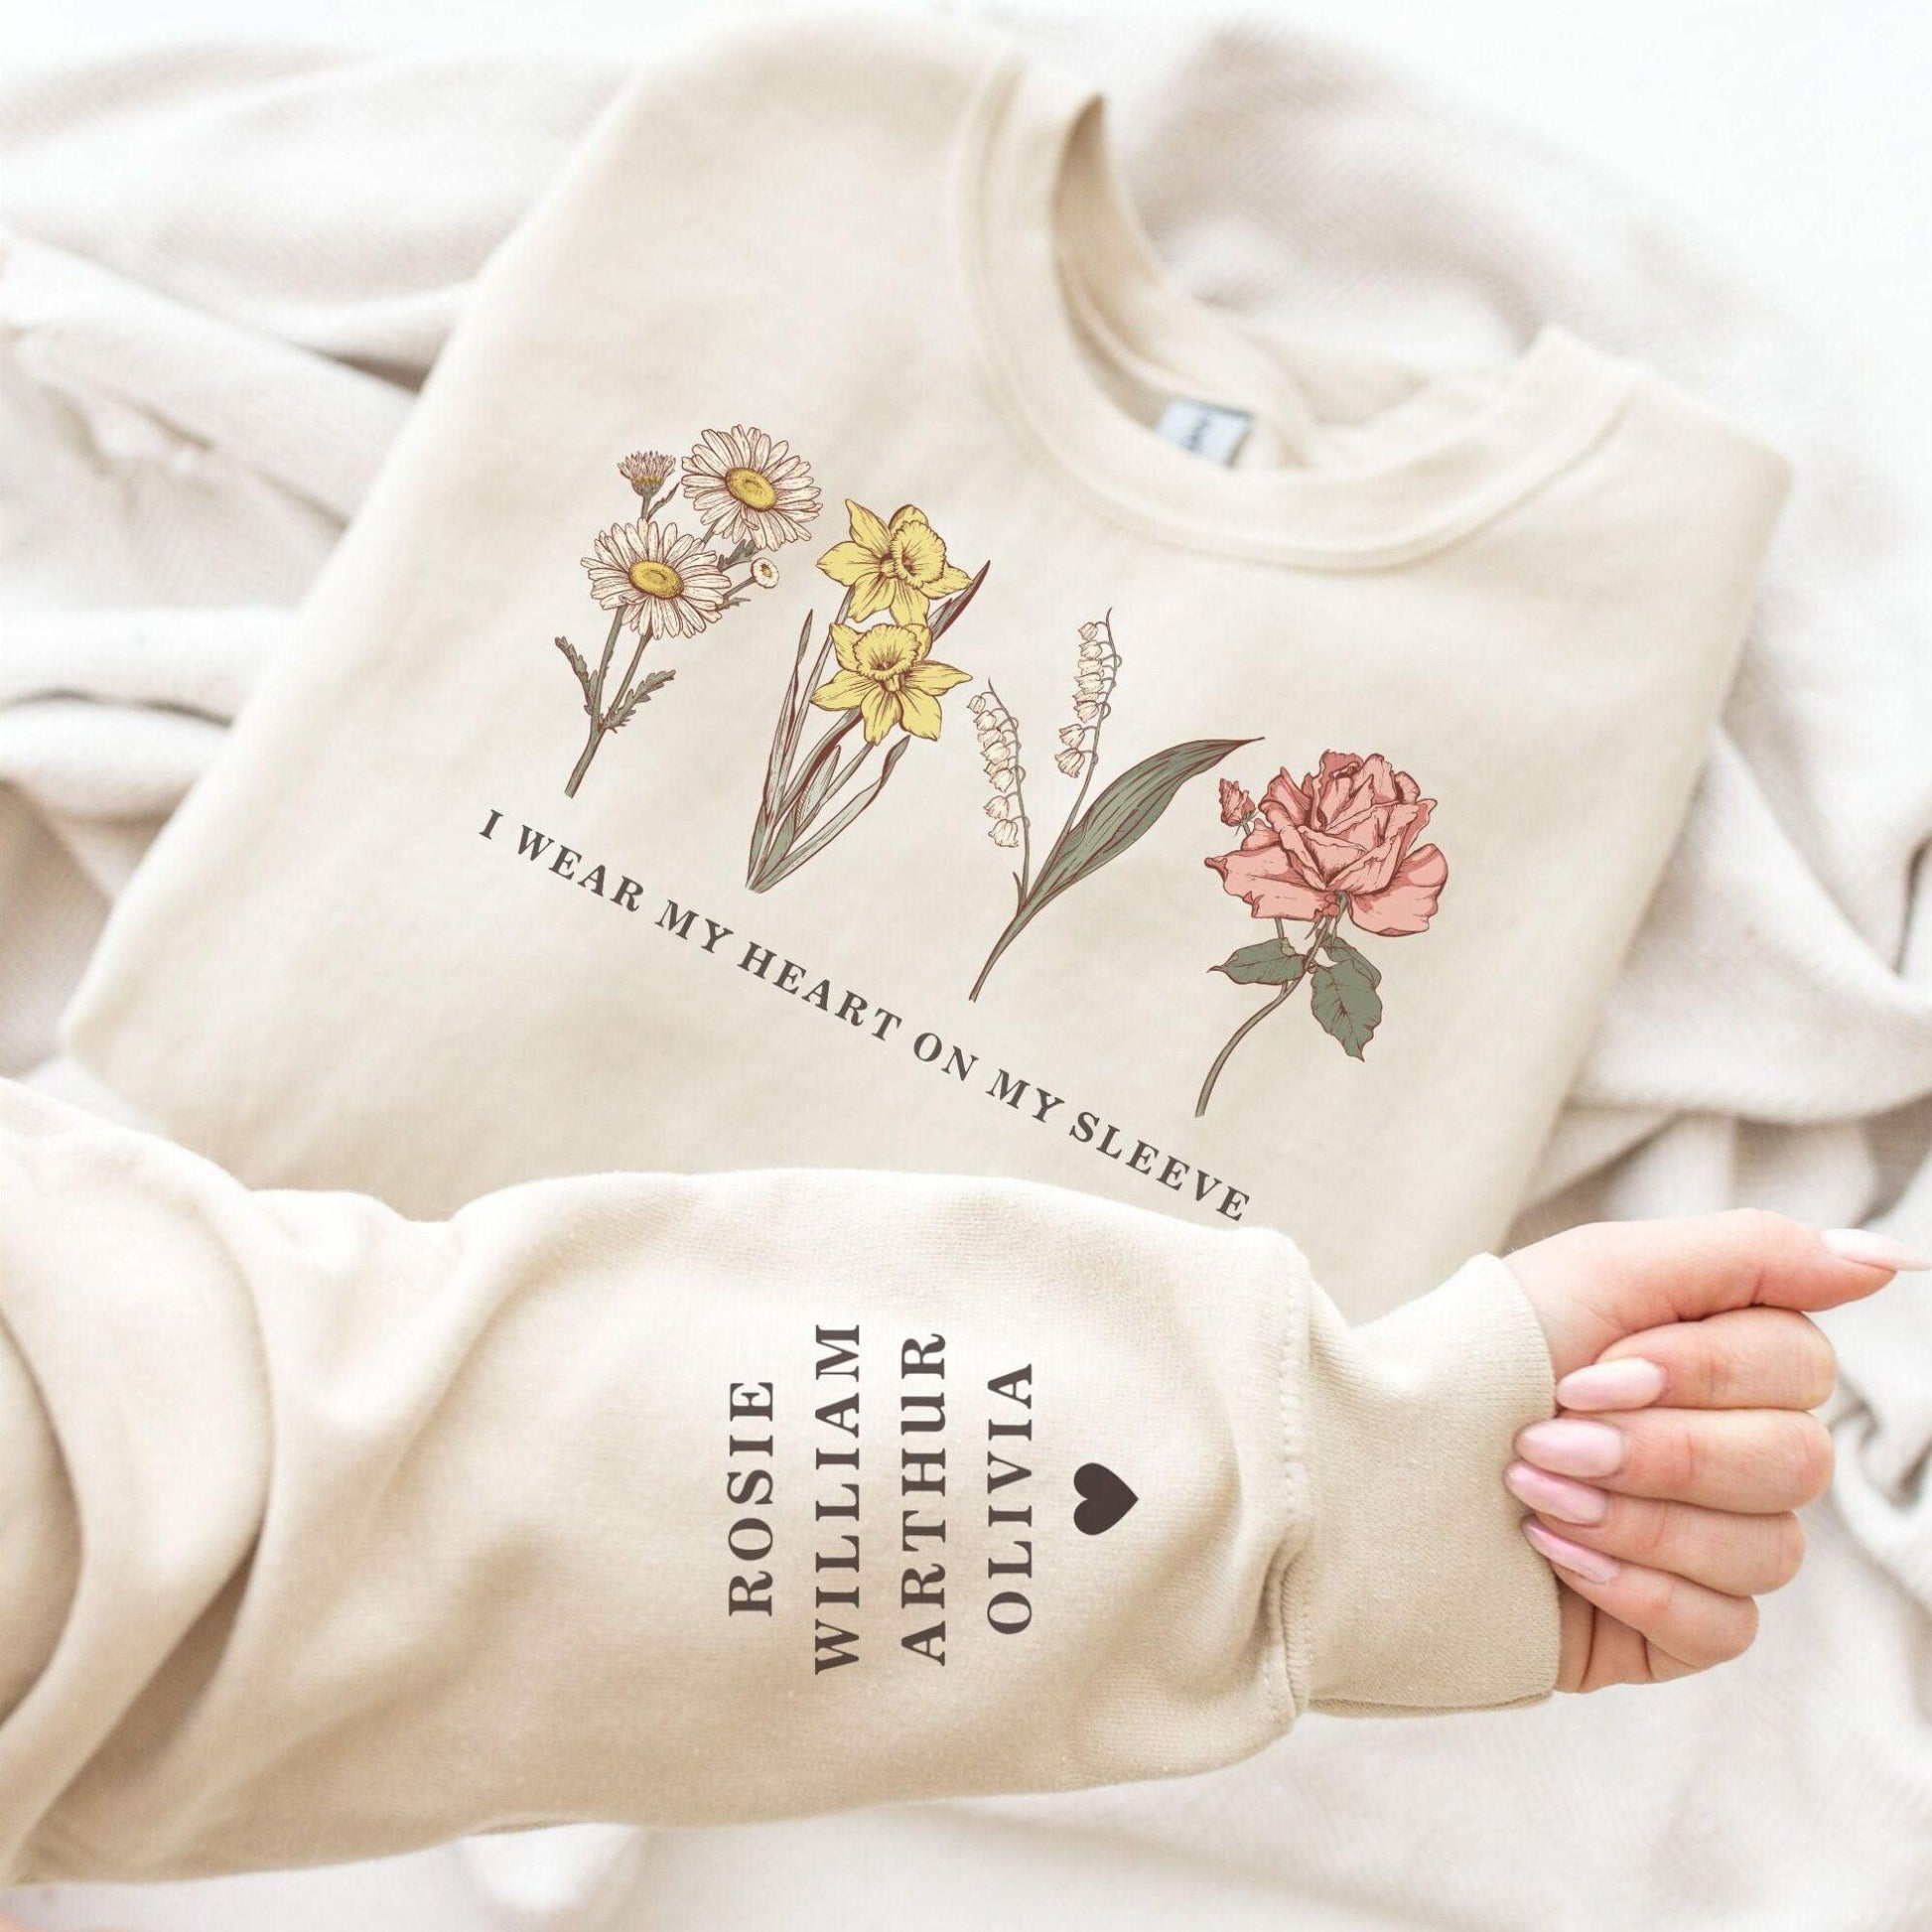 Individuelles Geburtsmonat Sweatshirt mit Geburtsblume Sweatshirt und Hoodie - Personalisiertes Geschenk Mama, Oma - GiftHaus